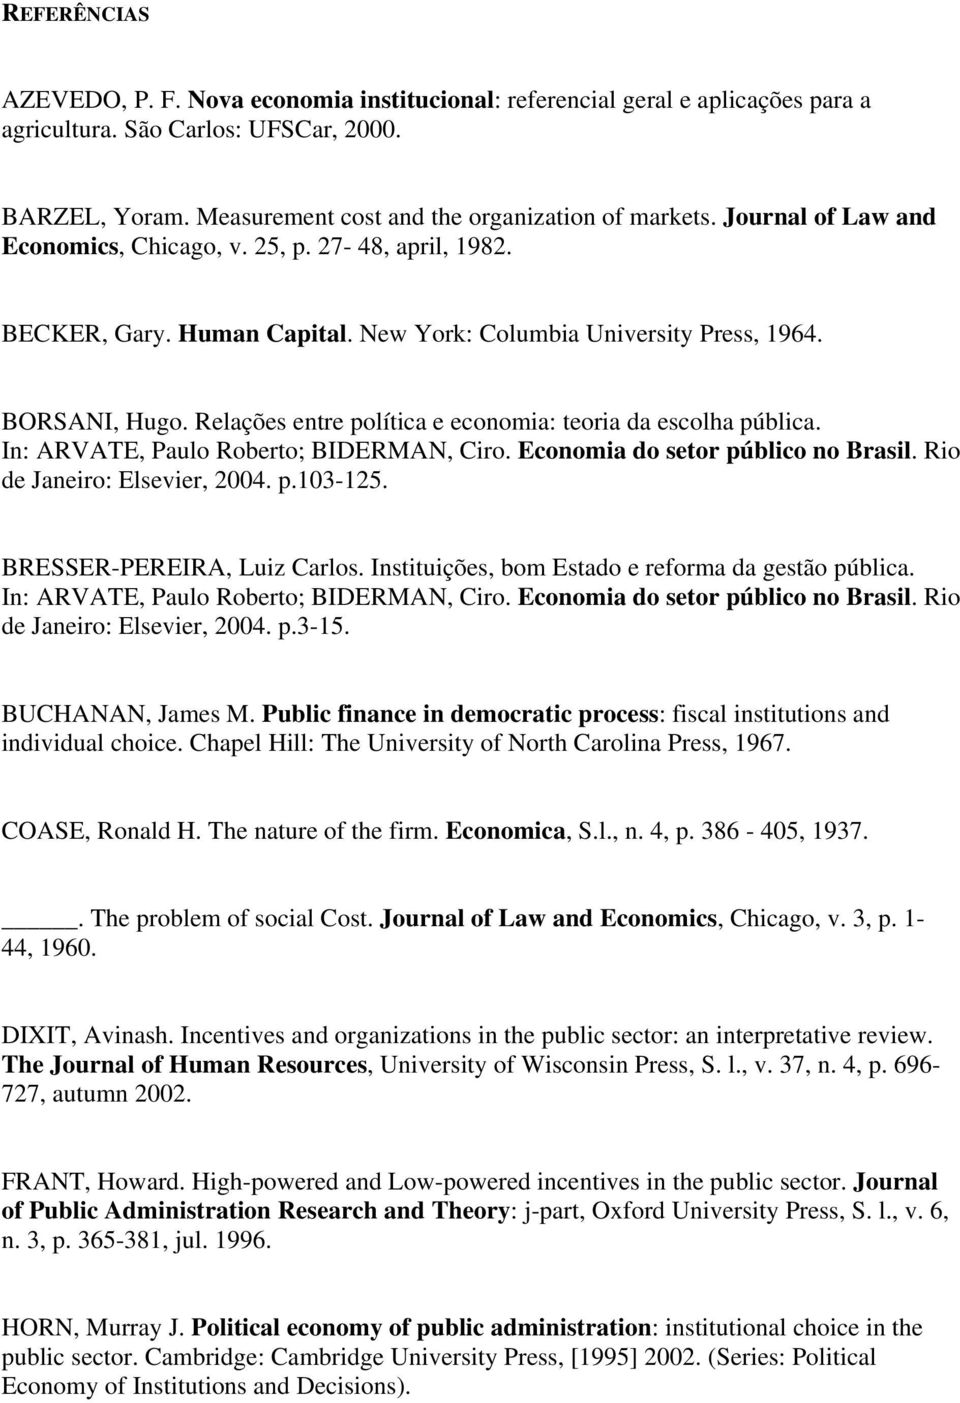 Relações entre política e economia: teoria da escolha pública. In: ARVATE, Paulo Roberto; BIDERMAN, Ciro. Economia do setor público no Brasil. Rio de Janeiro: Elsevier, 2004. p.103-125.